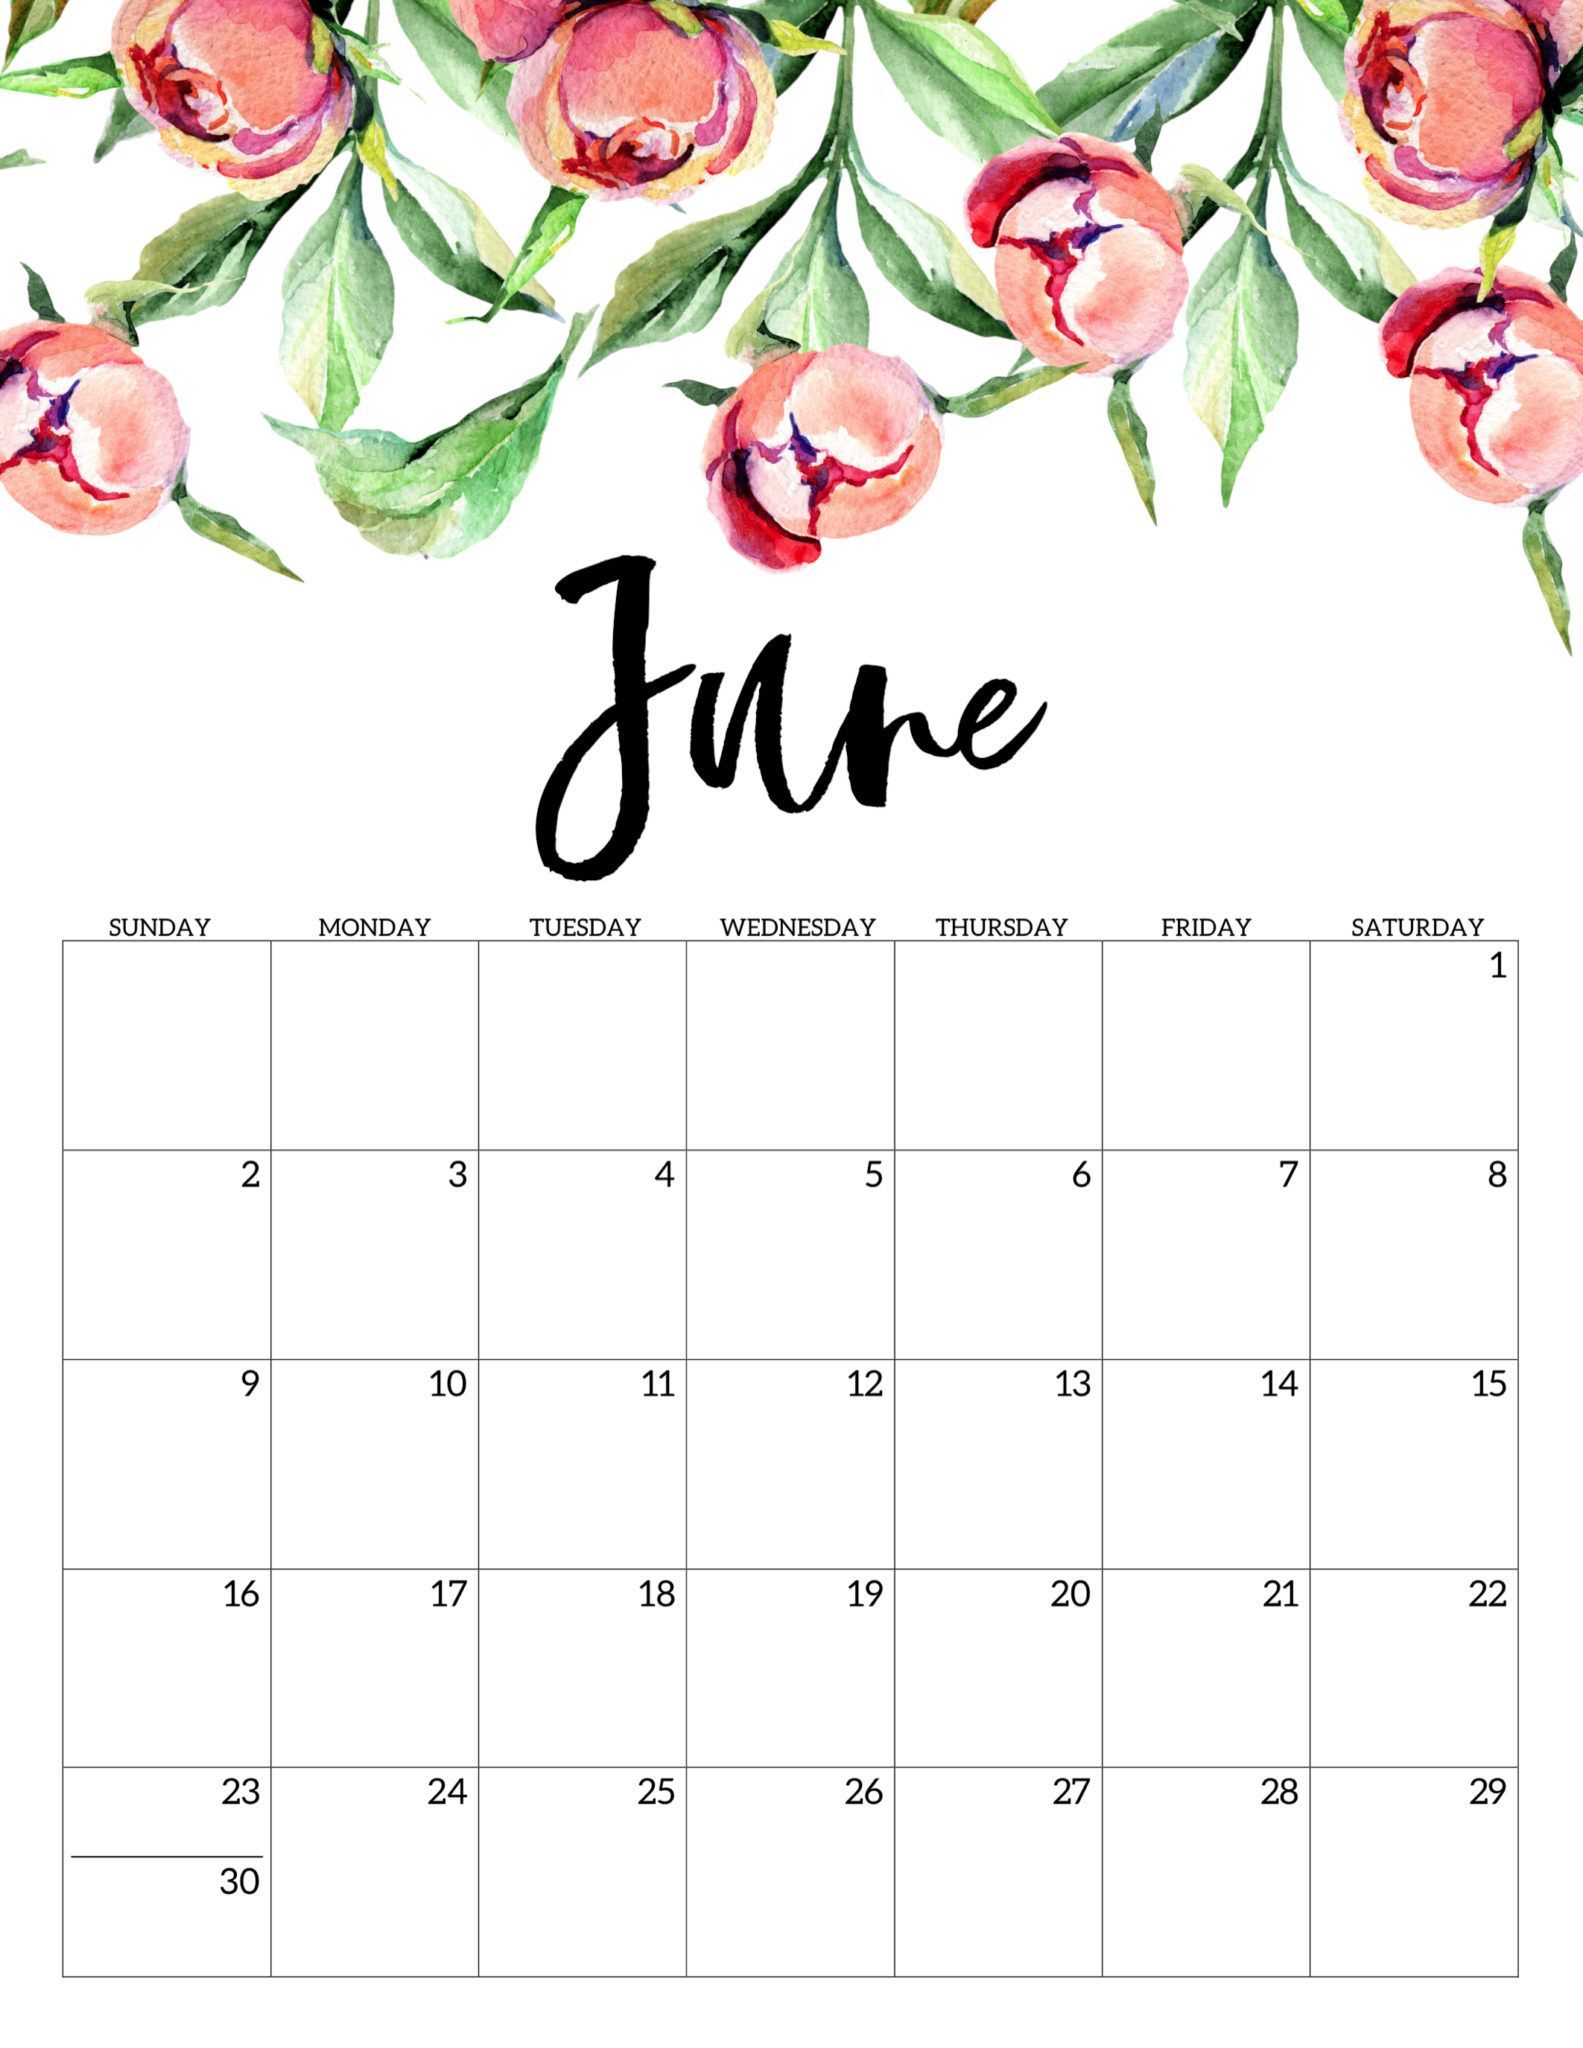 June 2020 Calendar For Desk